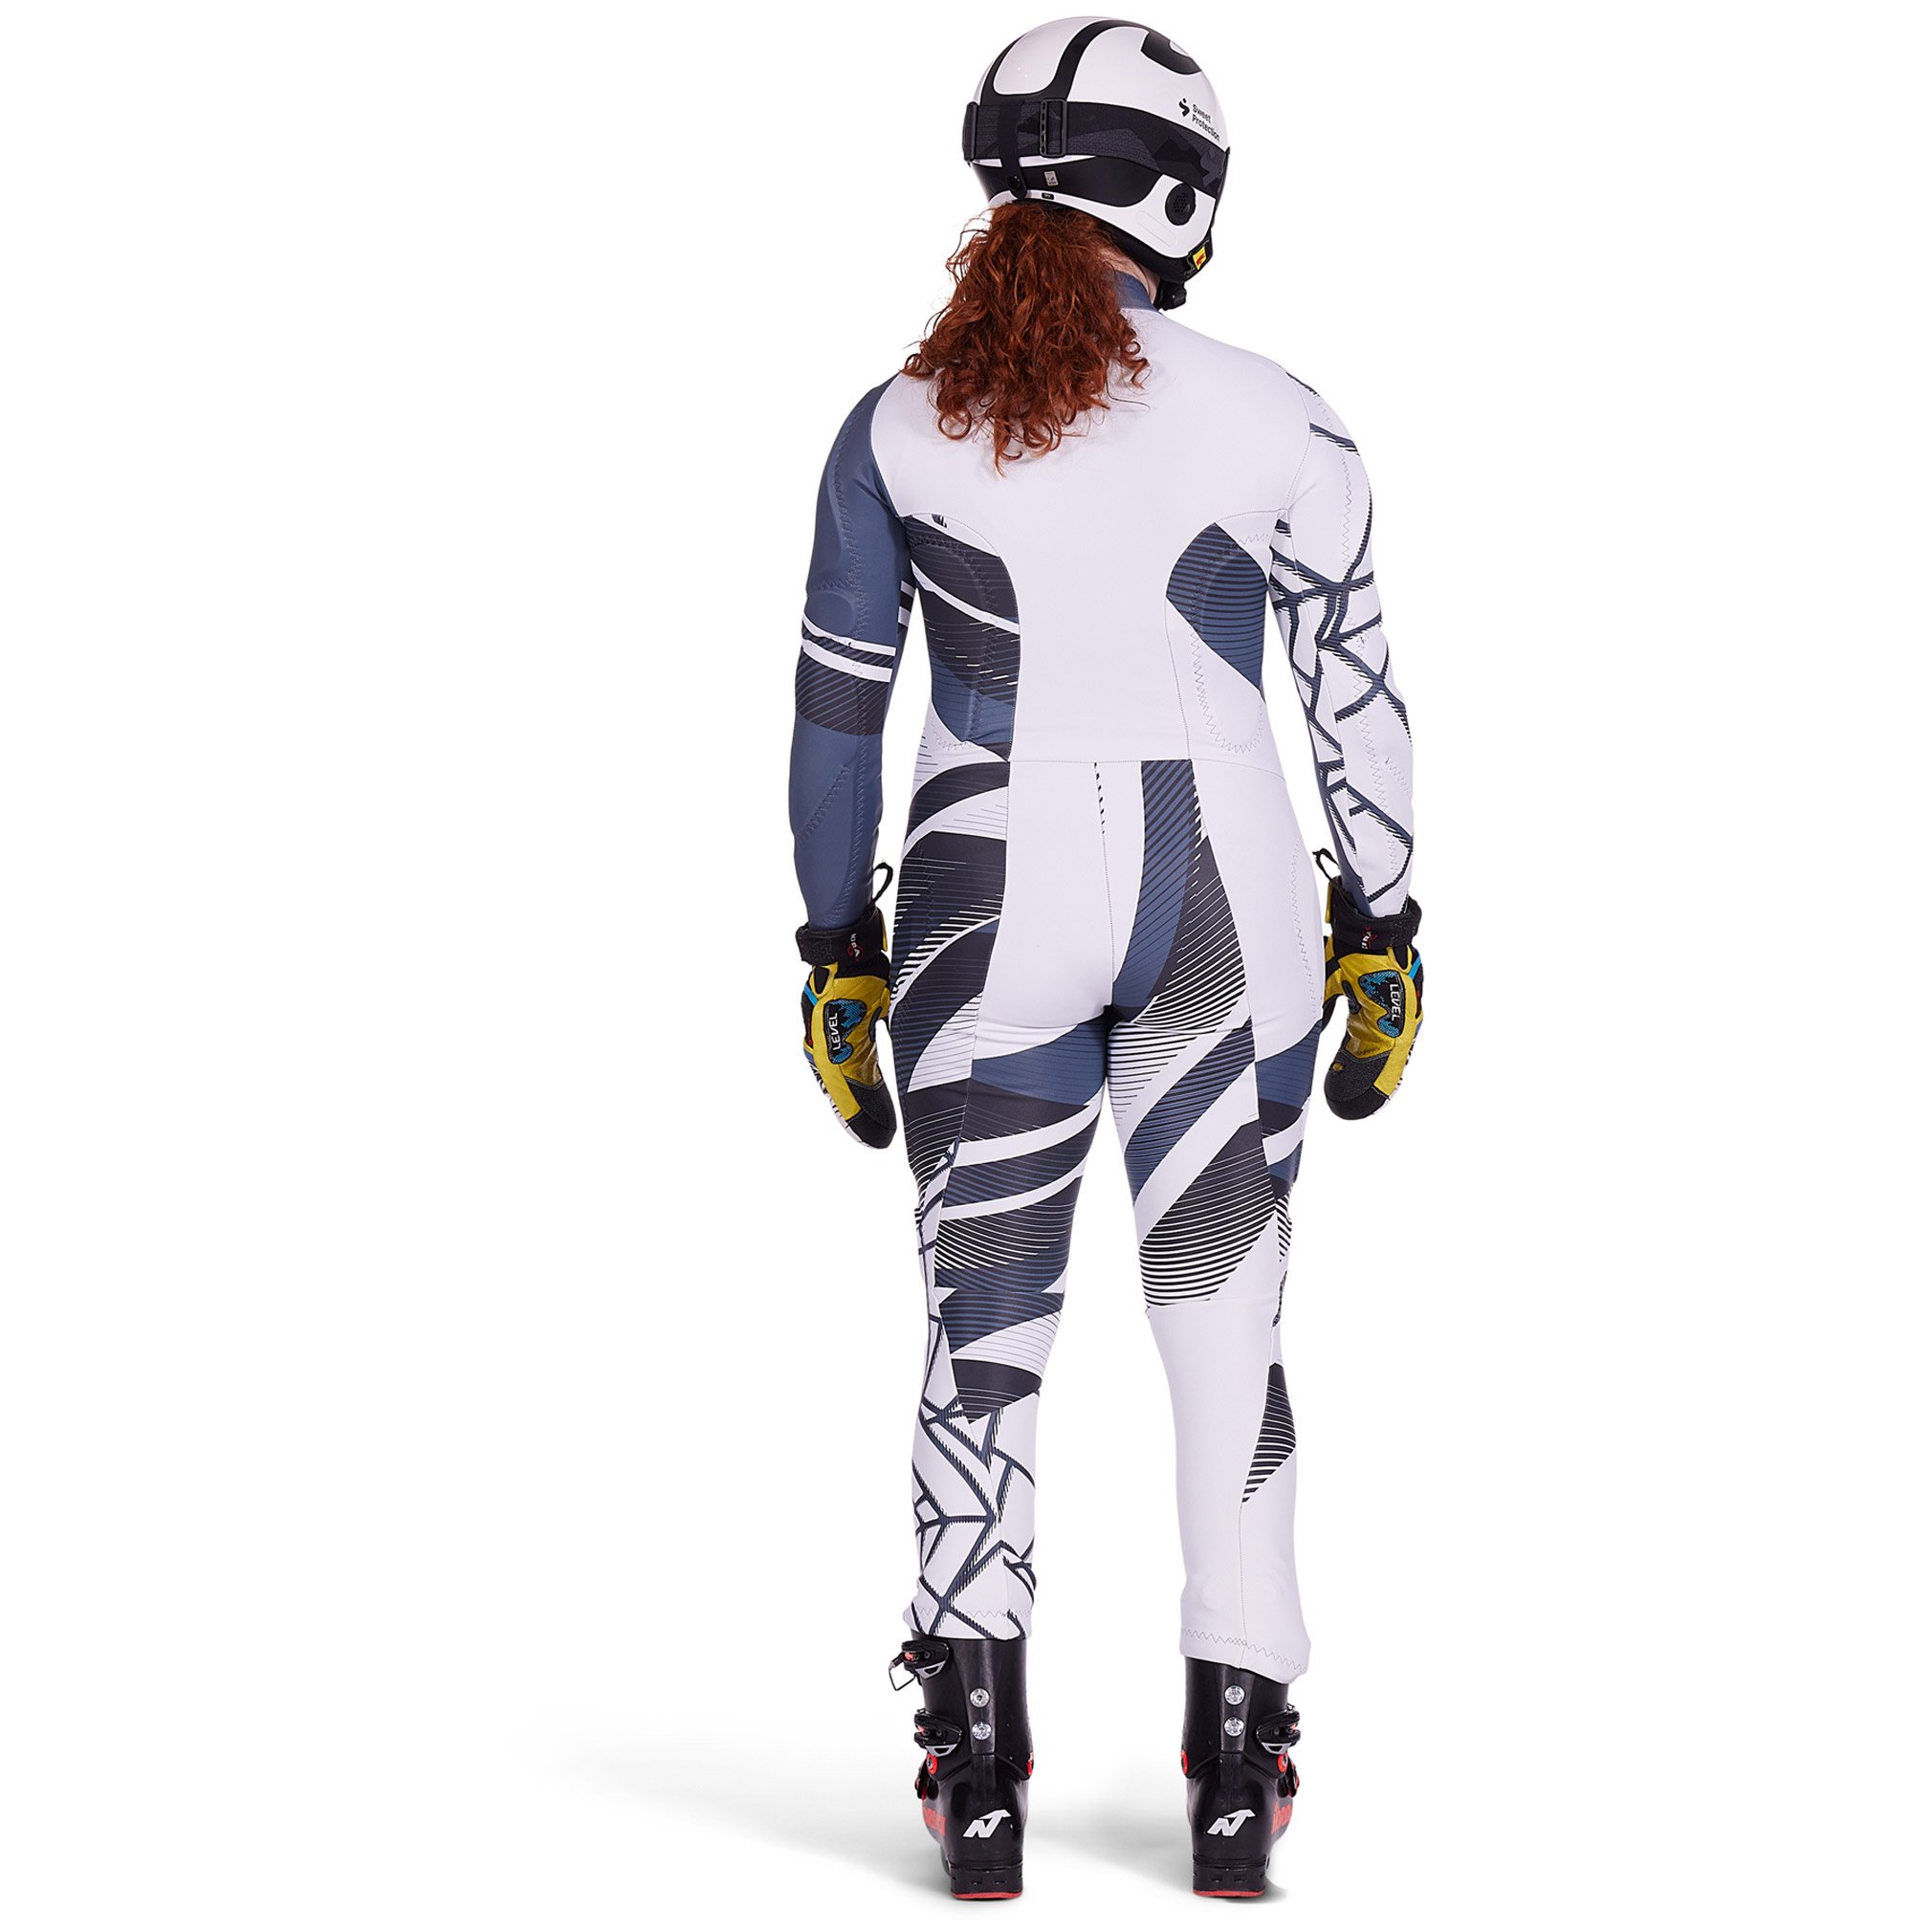 Spyder Women's Nine Ninety GS Race Suit - Black Stripe